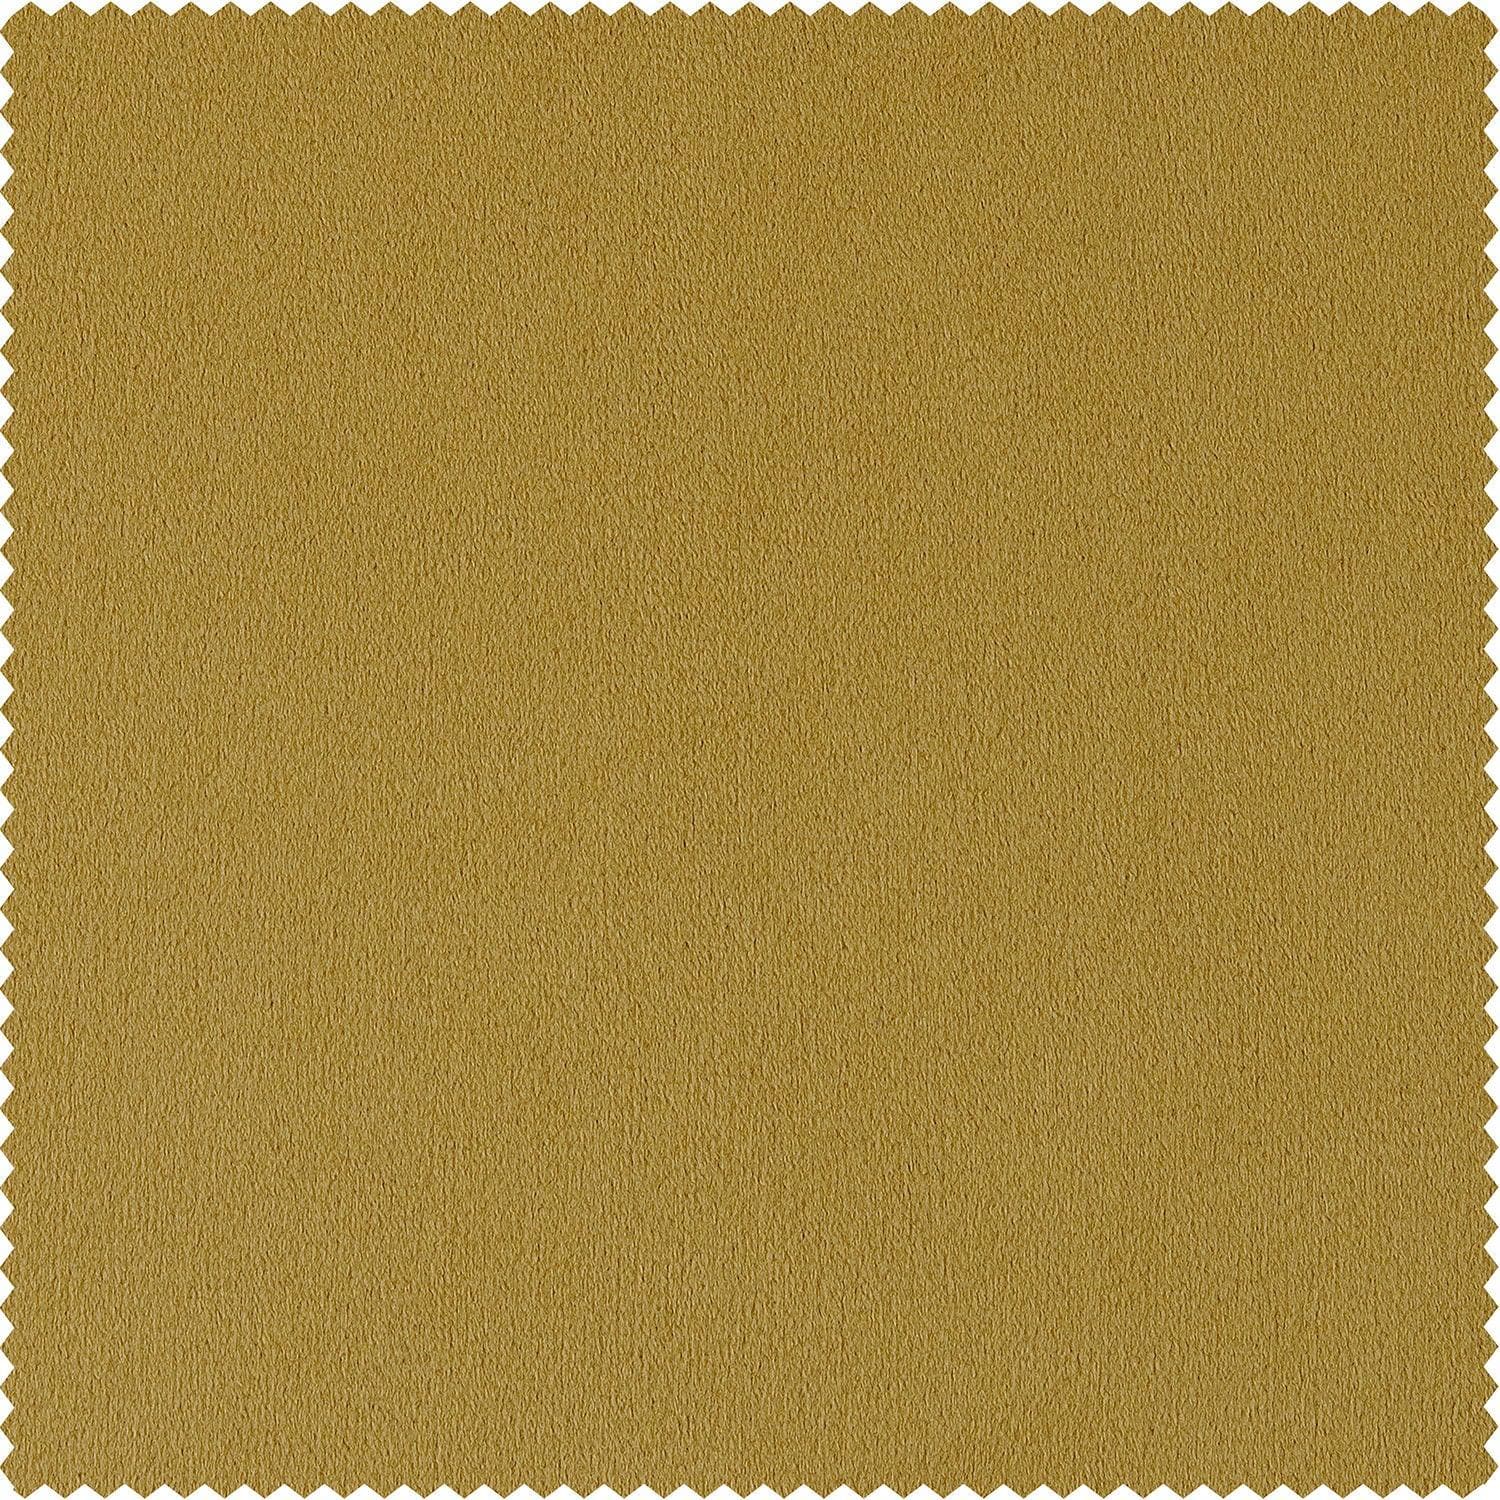 Fool's Gold Signature Velvet Cushion Covers - Pair